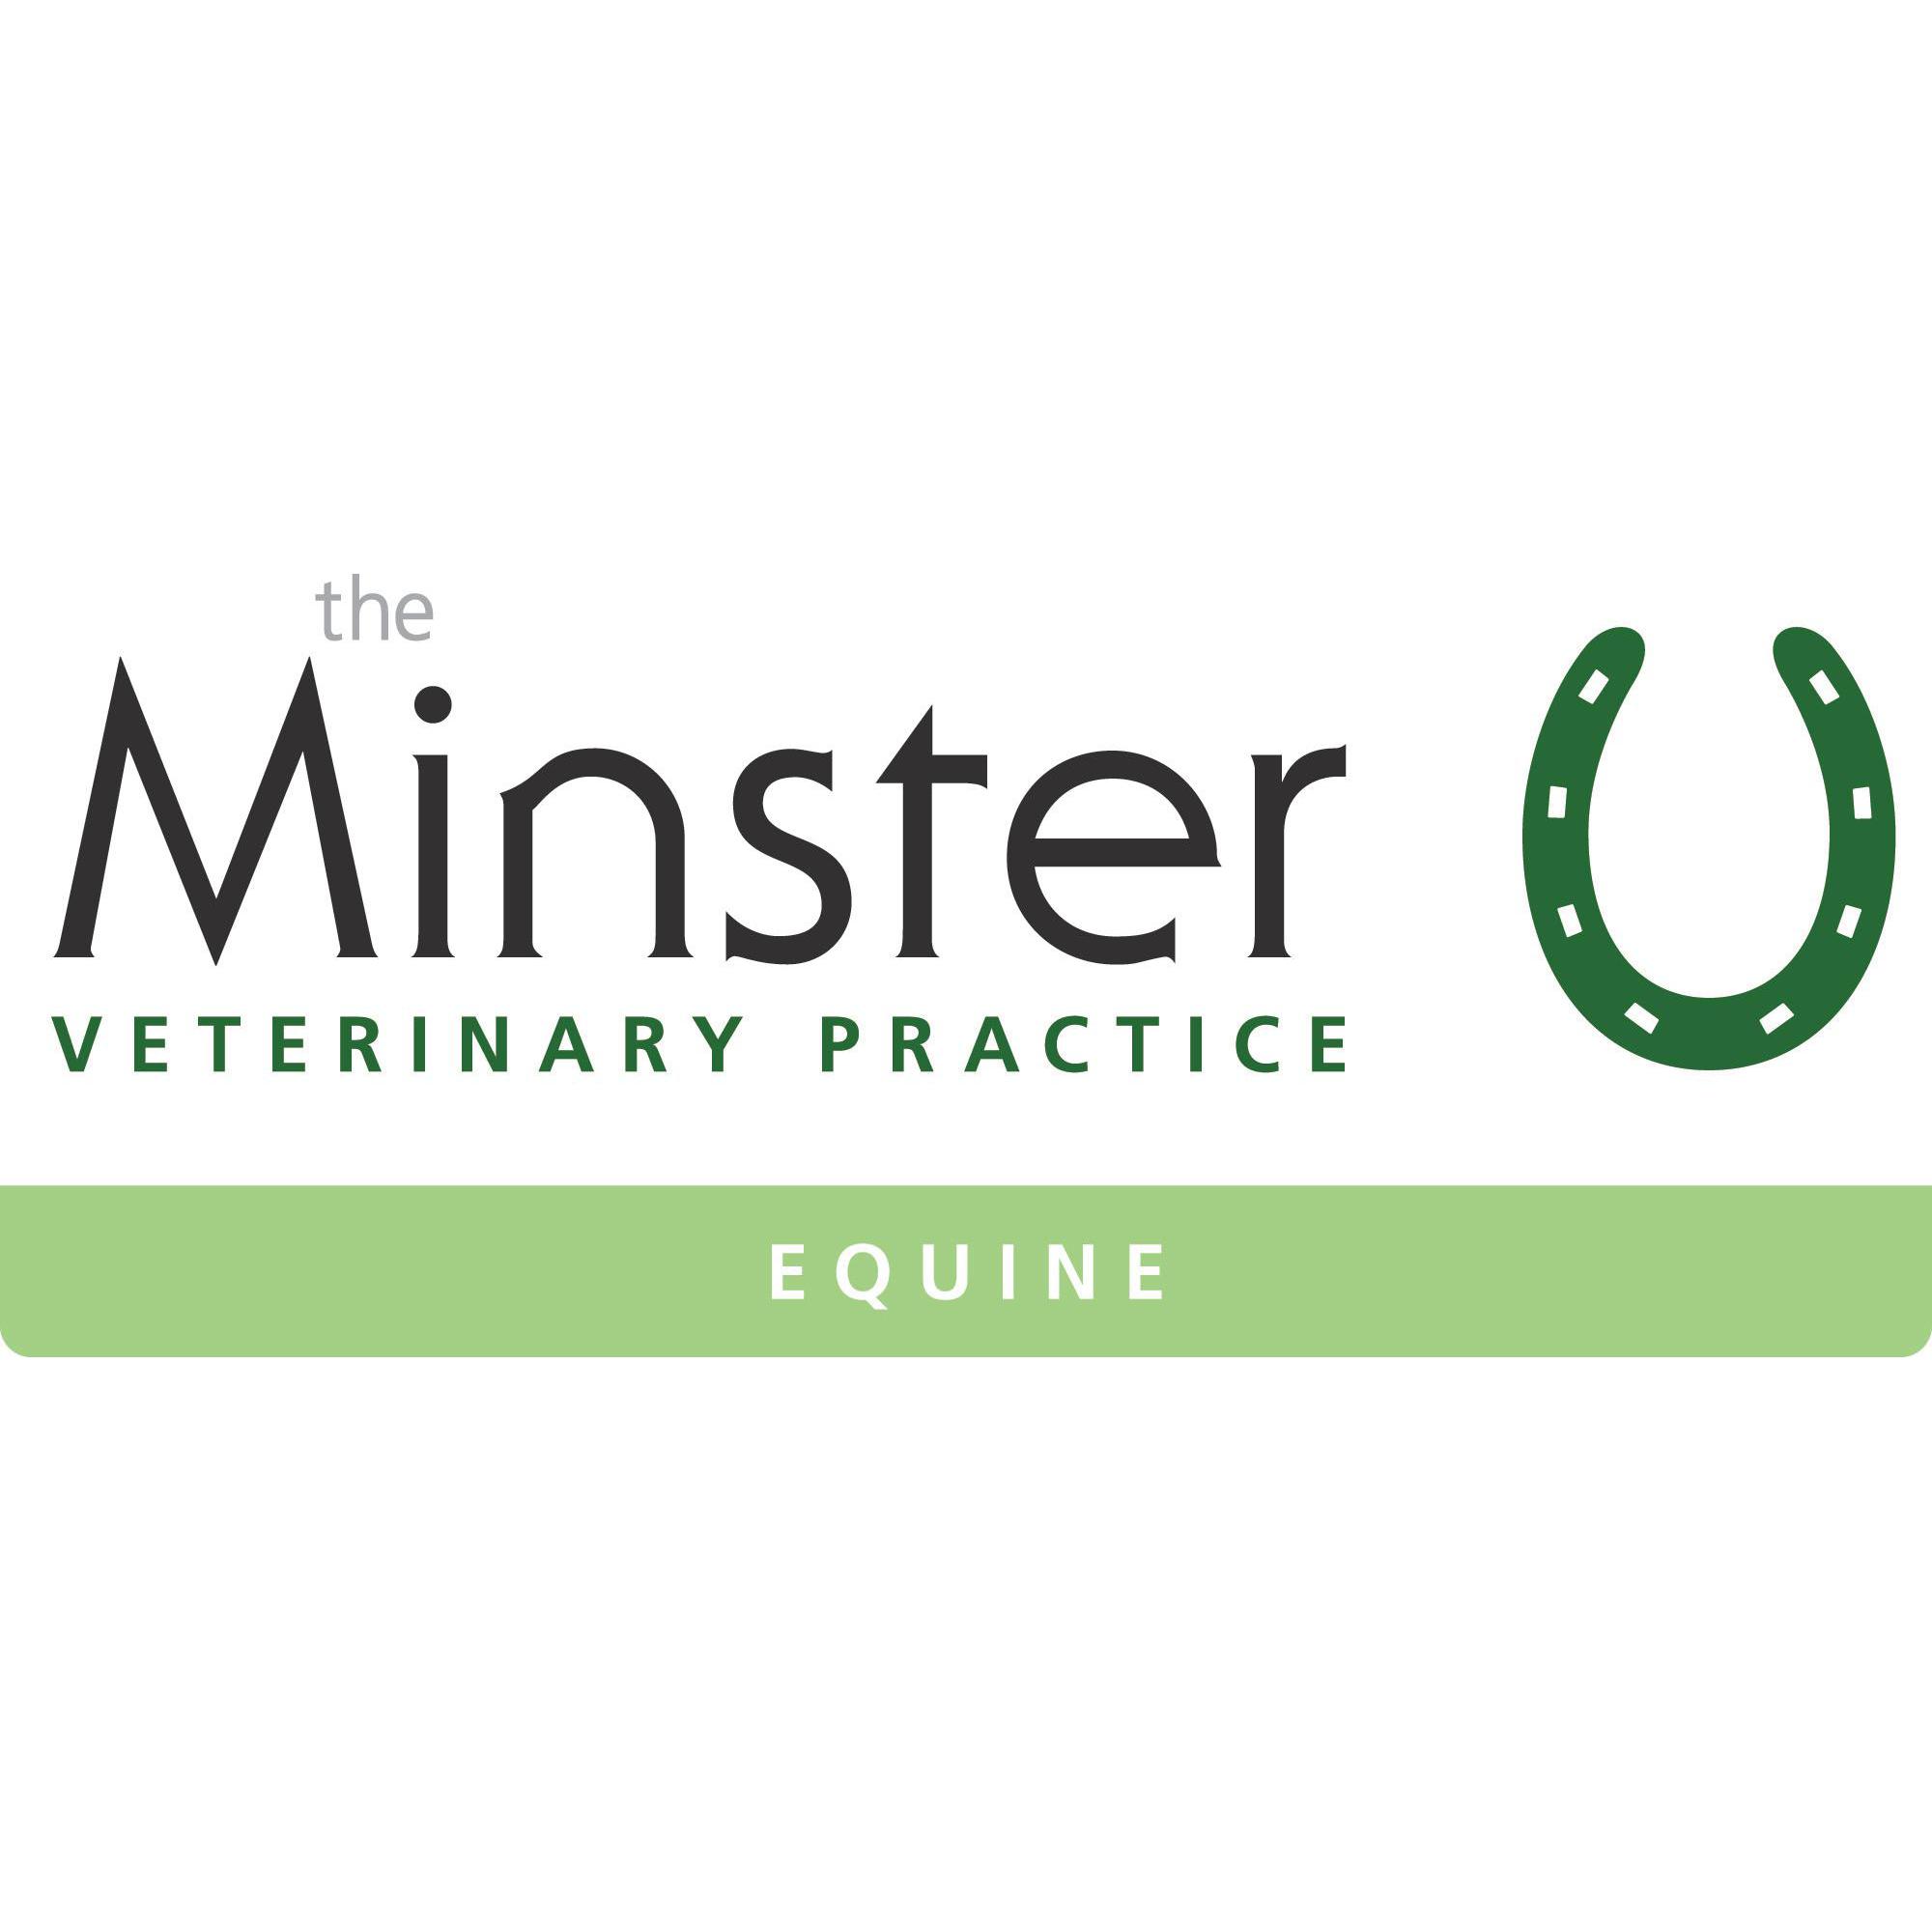 Minster Equine Practice, Malton Malton 01653 695076